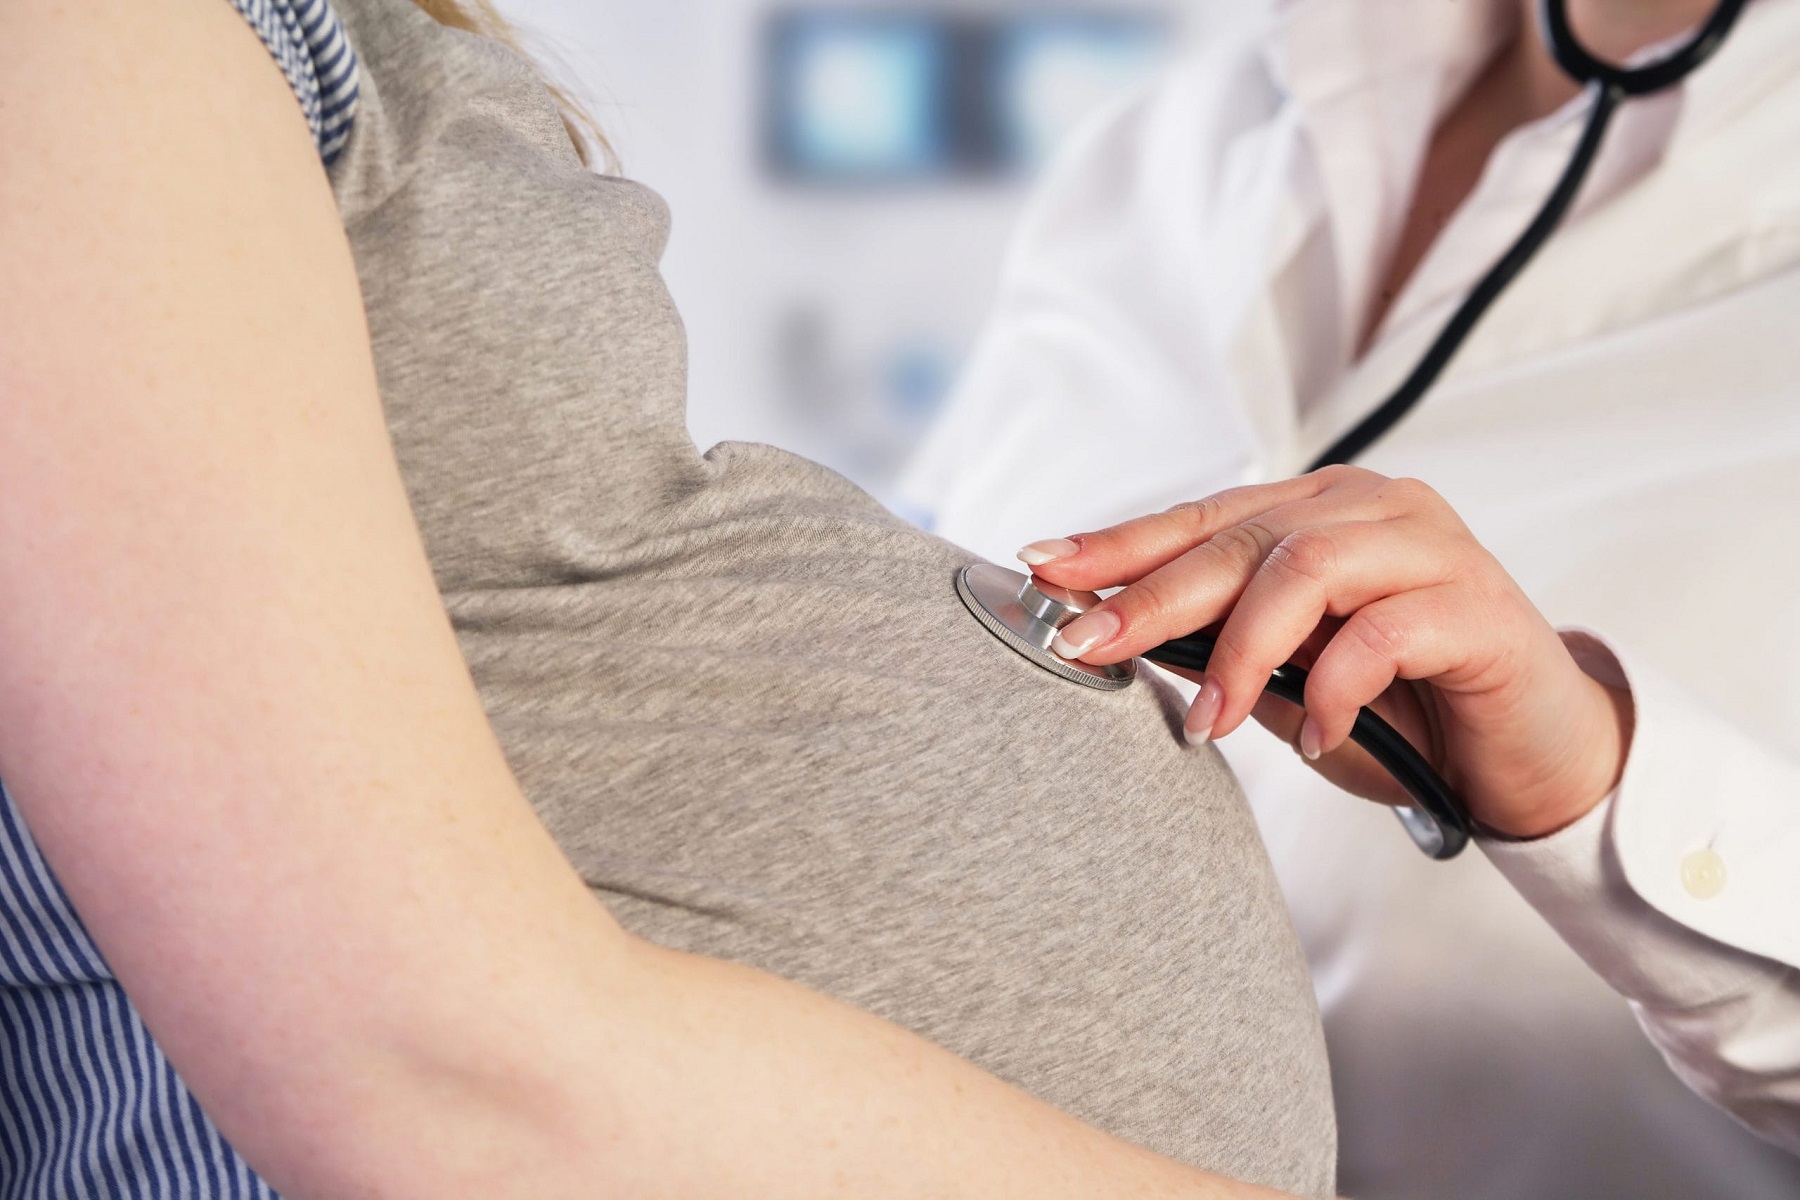 Γονιμότητα Κορωνοϊός: Τα εμβόλια COVID-19 επηρεάζουν τις πιθανότητες εγκυμοσύνης μου;